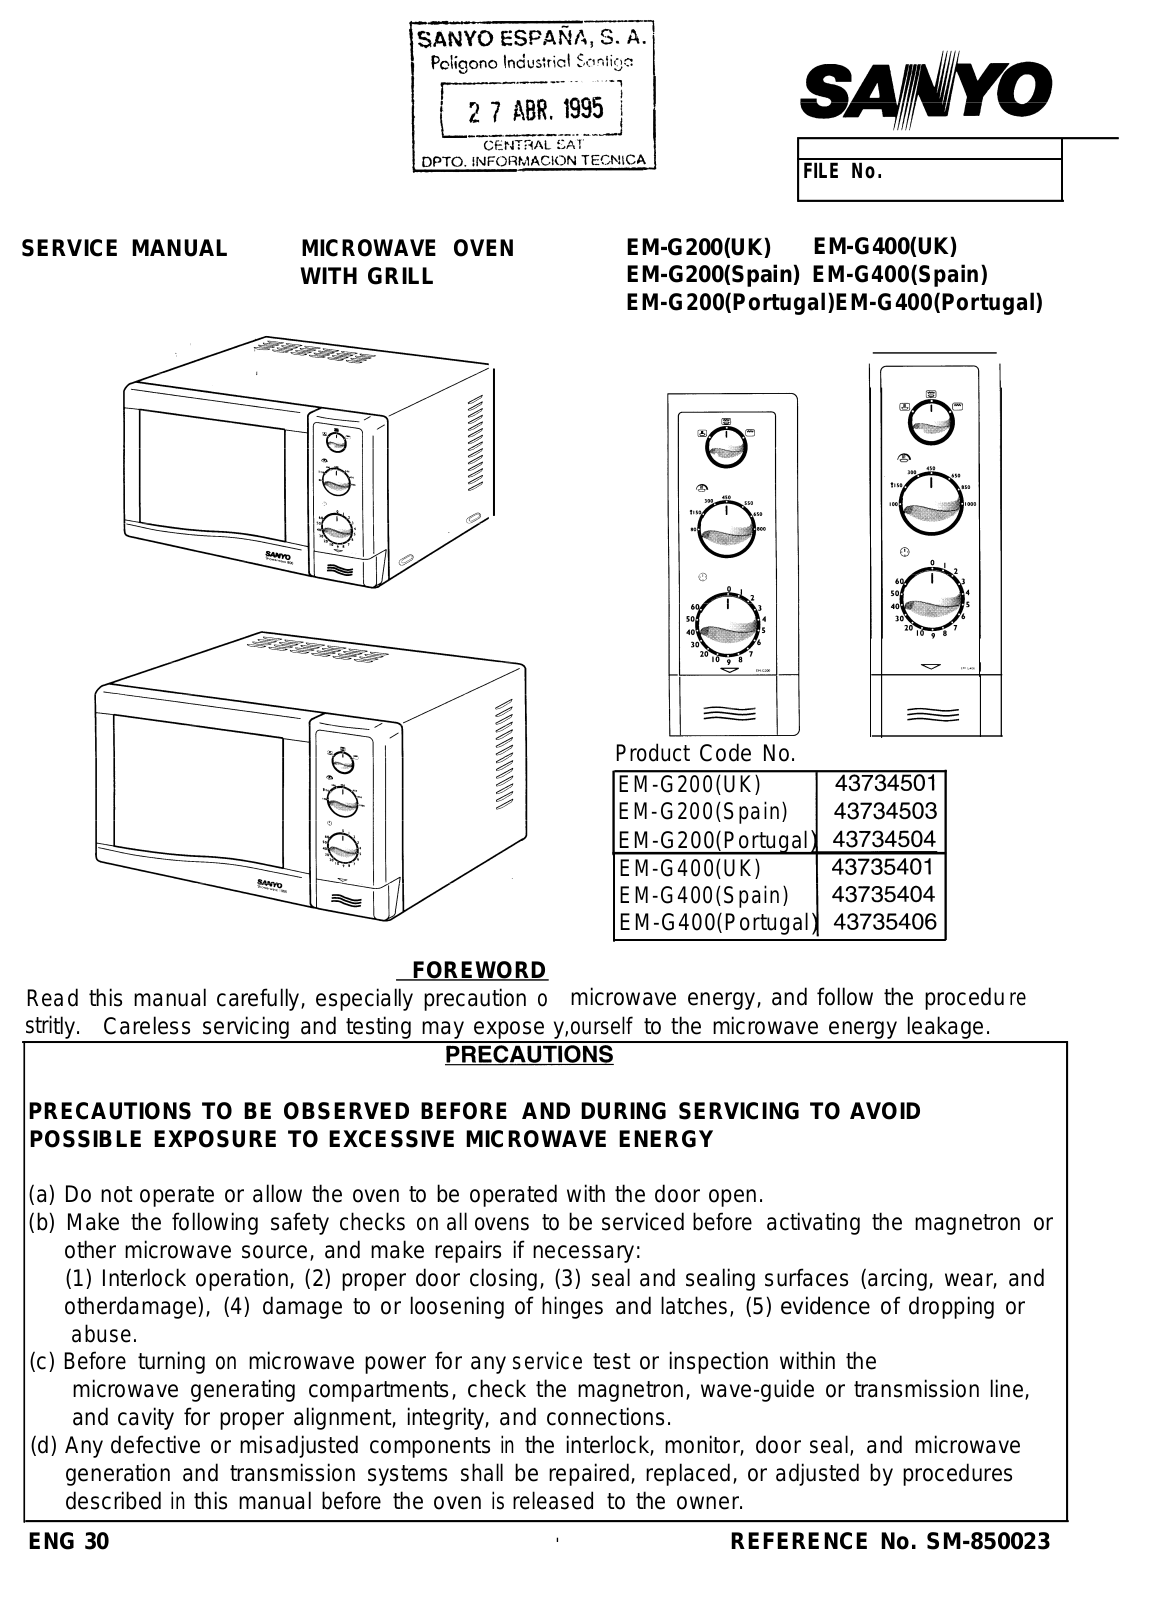 Sanyo EM-G200, EM-G400 Service Manual